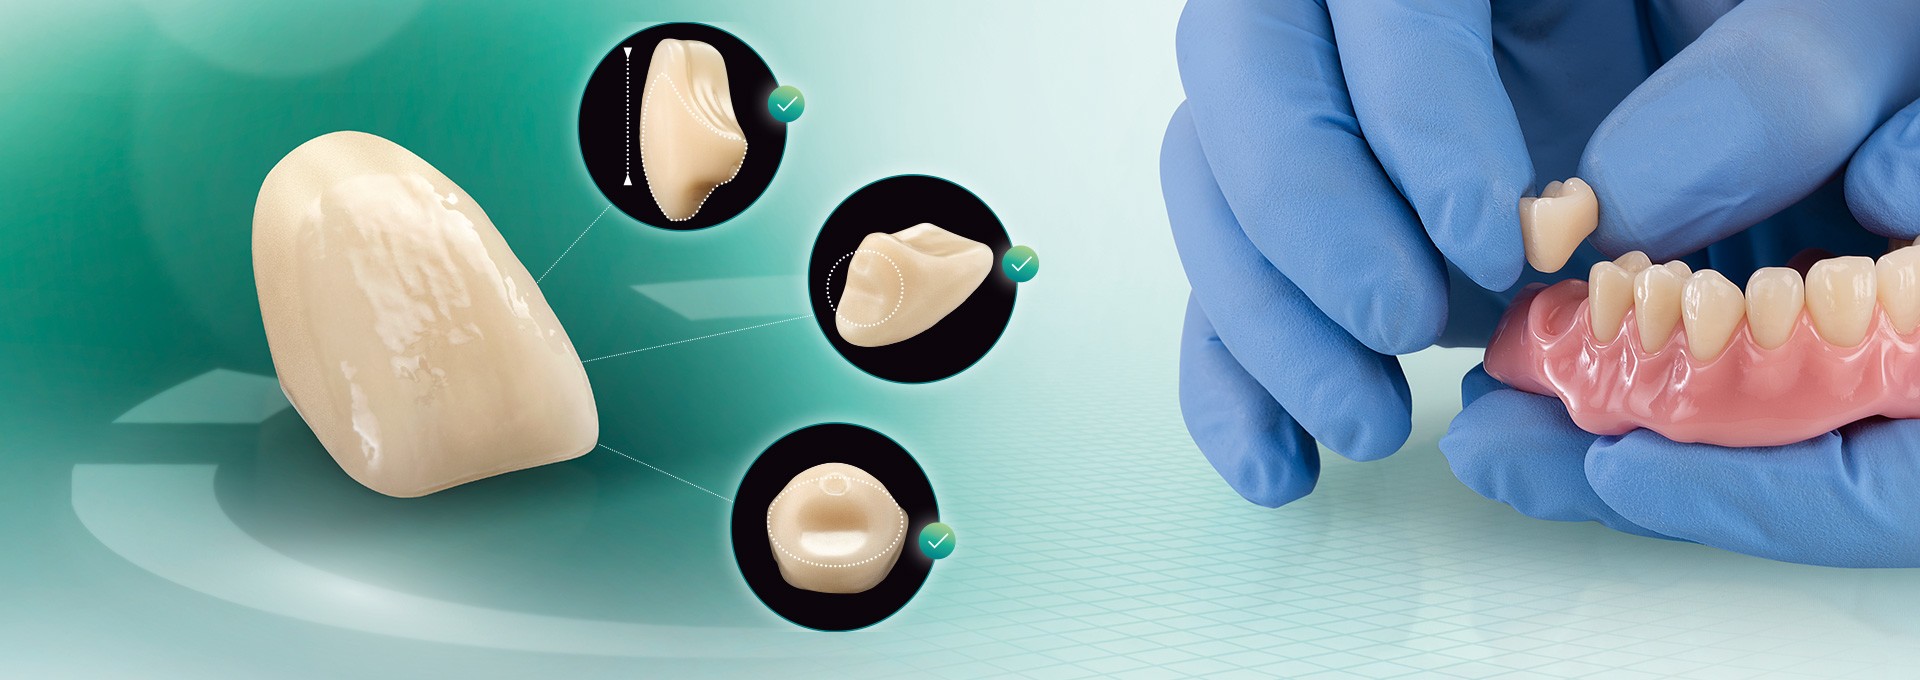 La dent VITA VIONIC VIGO sous différents angles et une prothèse fabriquée de manière numérique